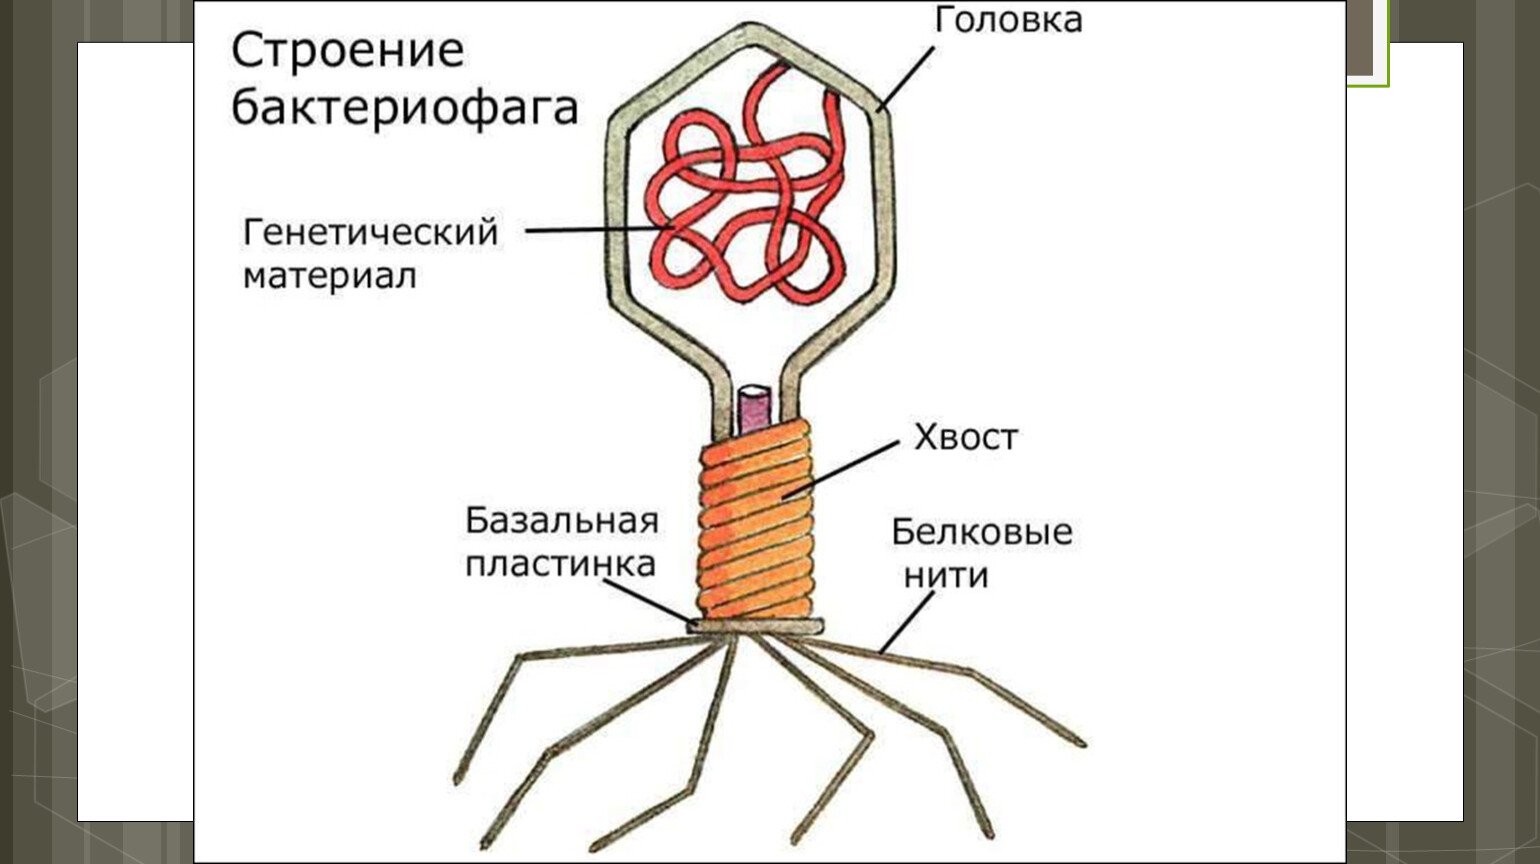 Наследственный аппарат вируса формы жизни бактериофаги. Строение фага микробиология. Строение бактериофага микробиология. Структура бактериофага микробиология. Структура фагов микробиология.